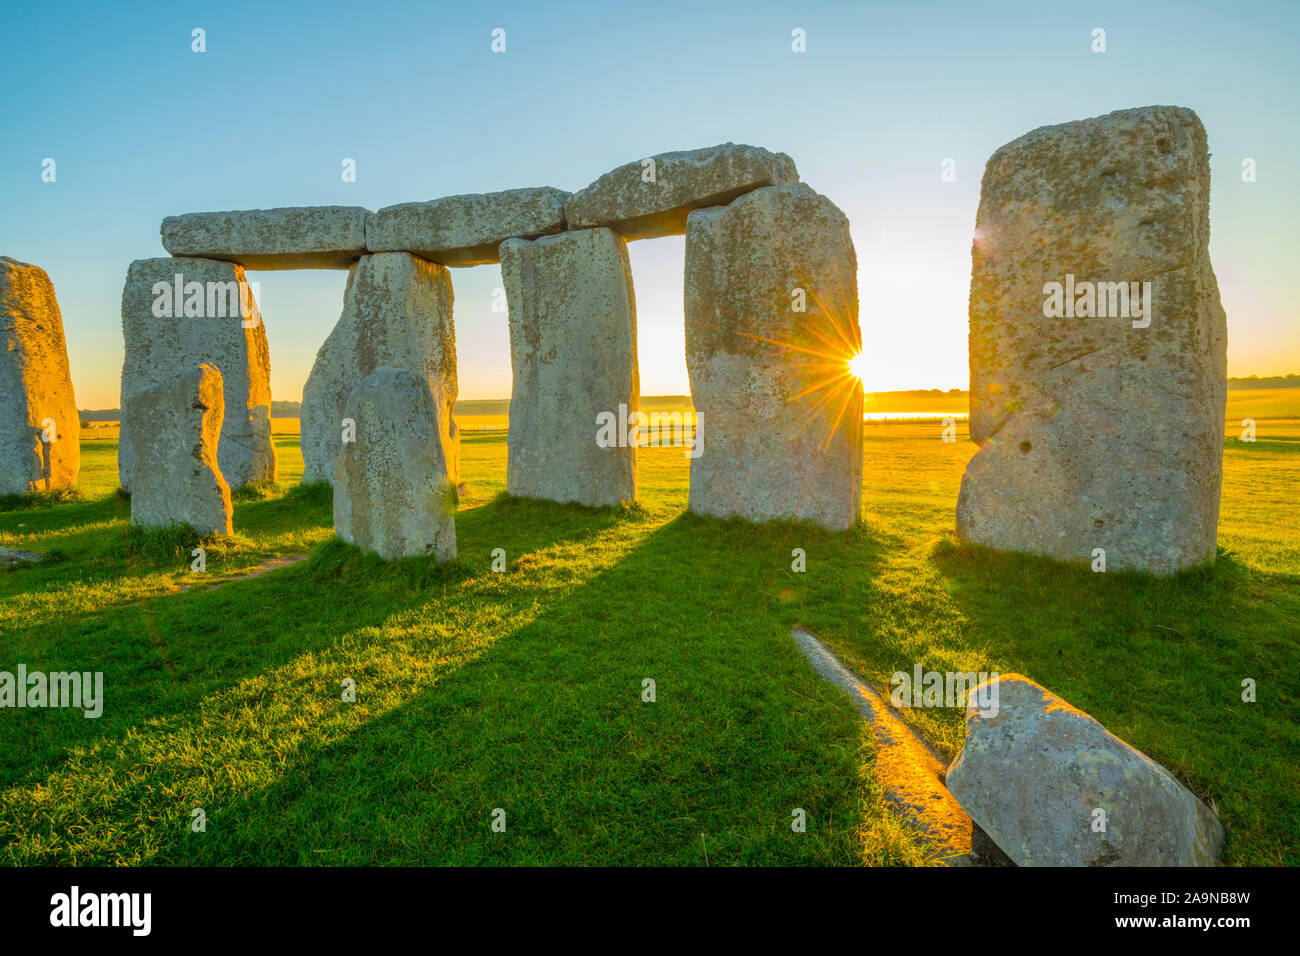 Stonehenge bei Sonnenaufgang, Stein Kreis auf dem Salisbury Plain, 3000-1500 v. Chr., Wiltshire, England, Großbritannien - Europas berühmteste prähistorische Stätte Stockfoto